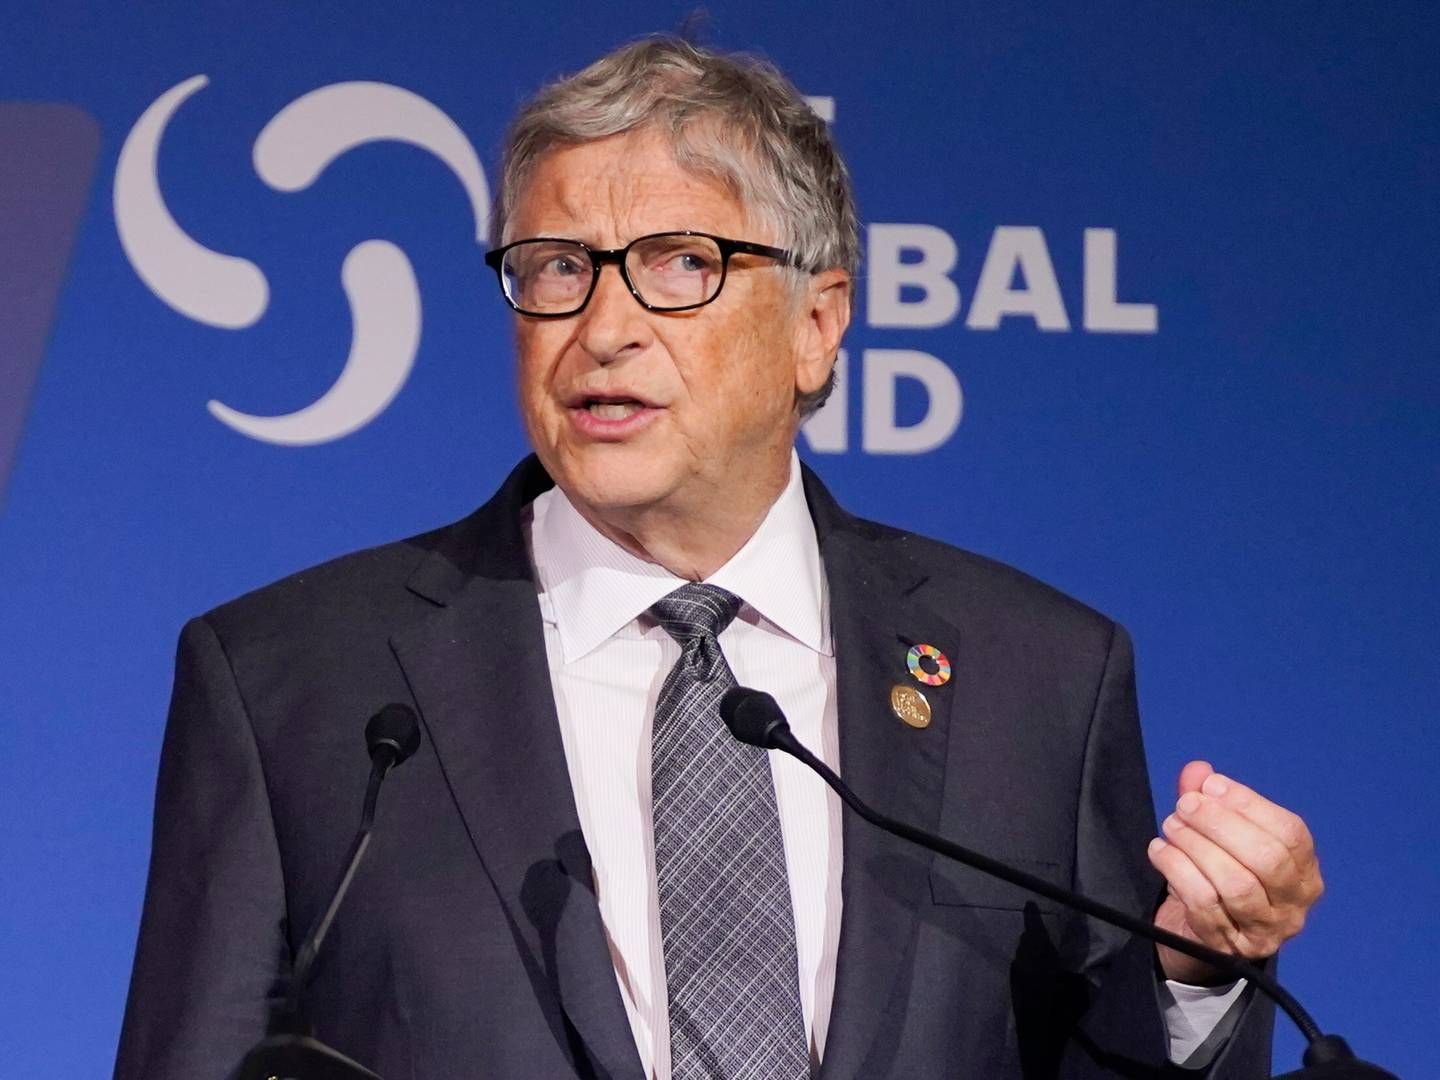 Bill Gates er grundlægger af Microsoft og driver i dag milliardfonden Bill & Melinda Gates Foundation.